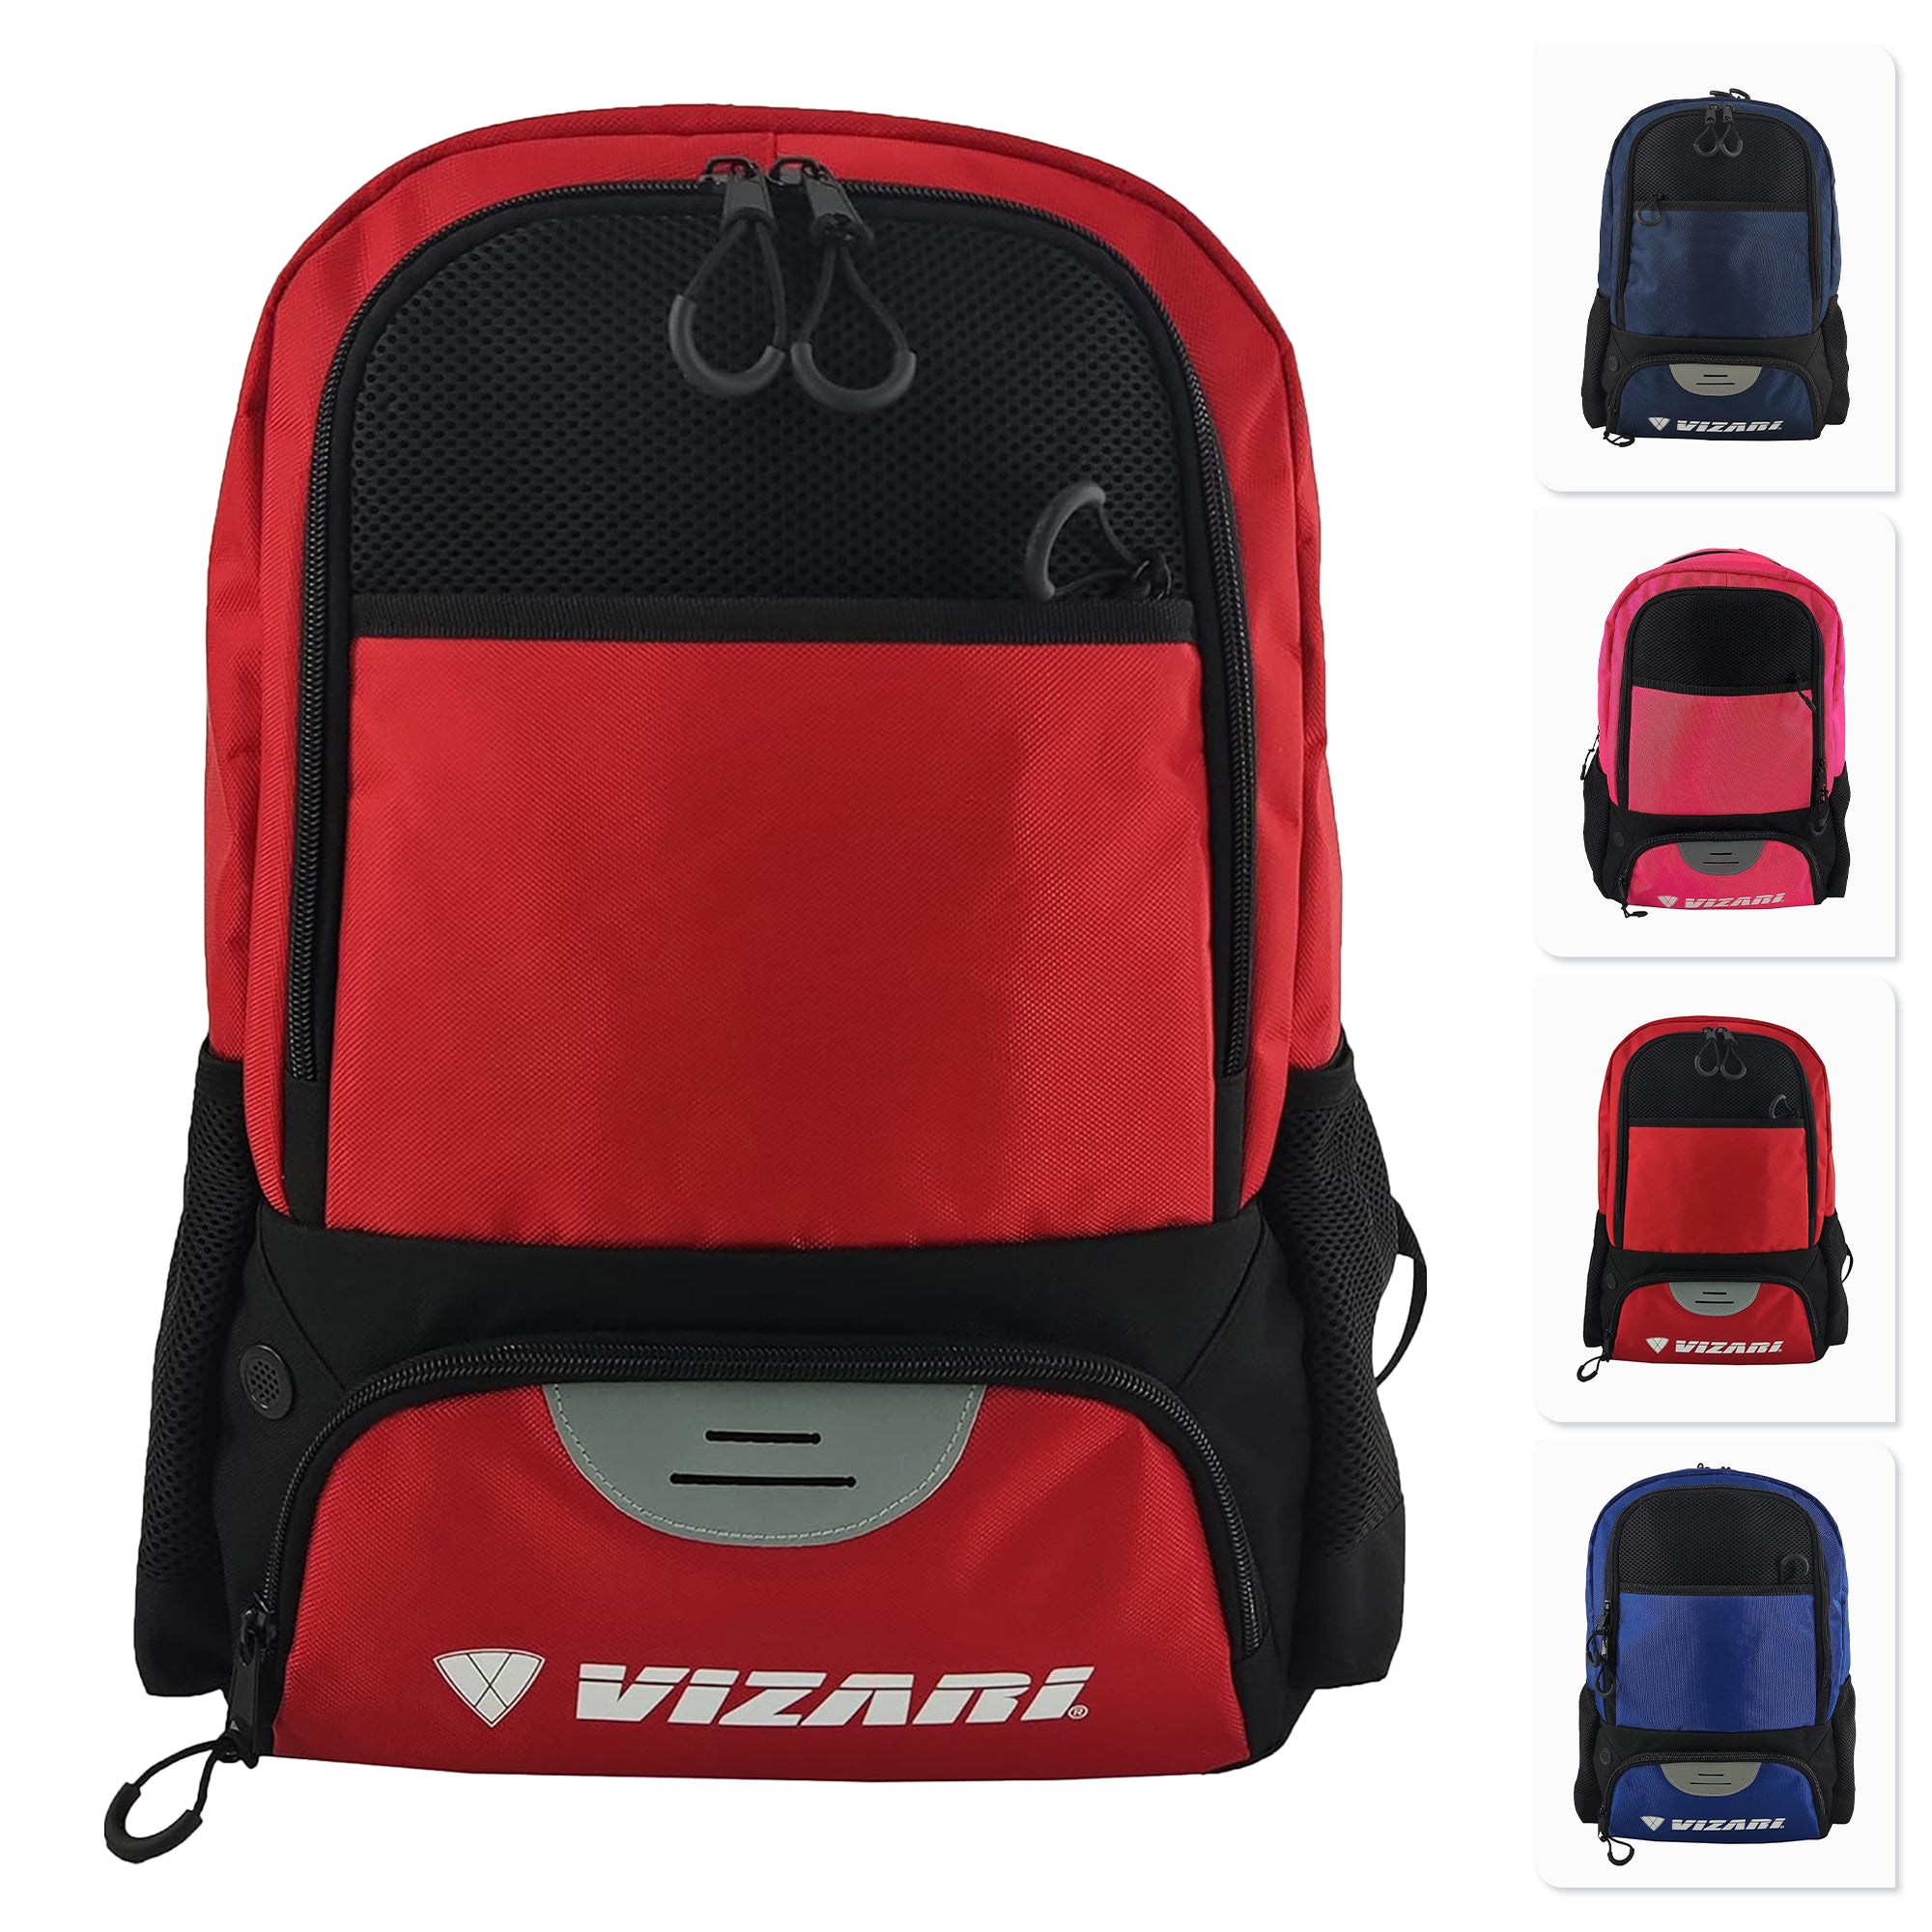 Avila Soccer Backpack - Black/Red